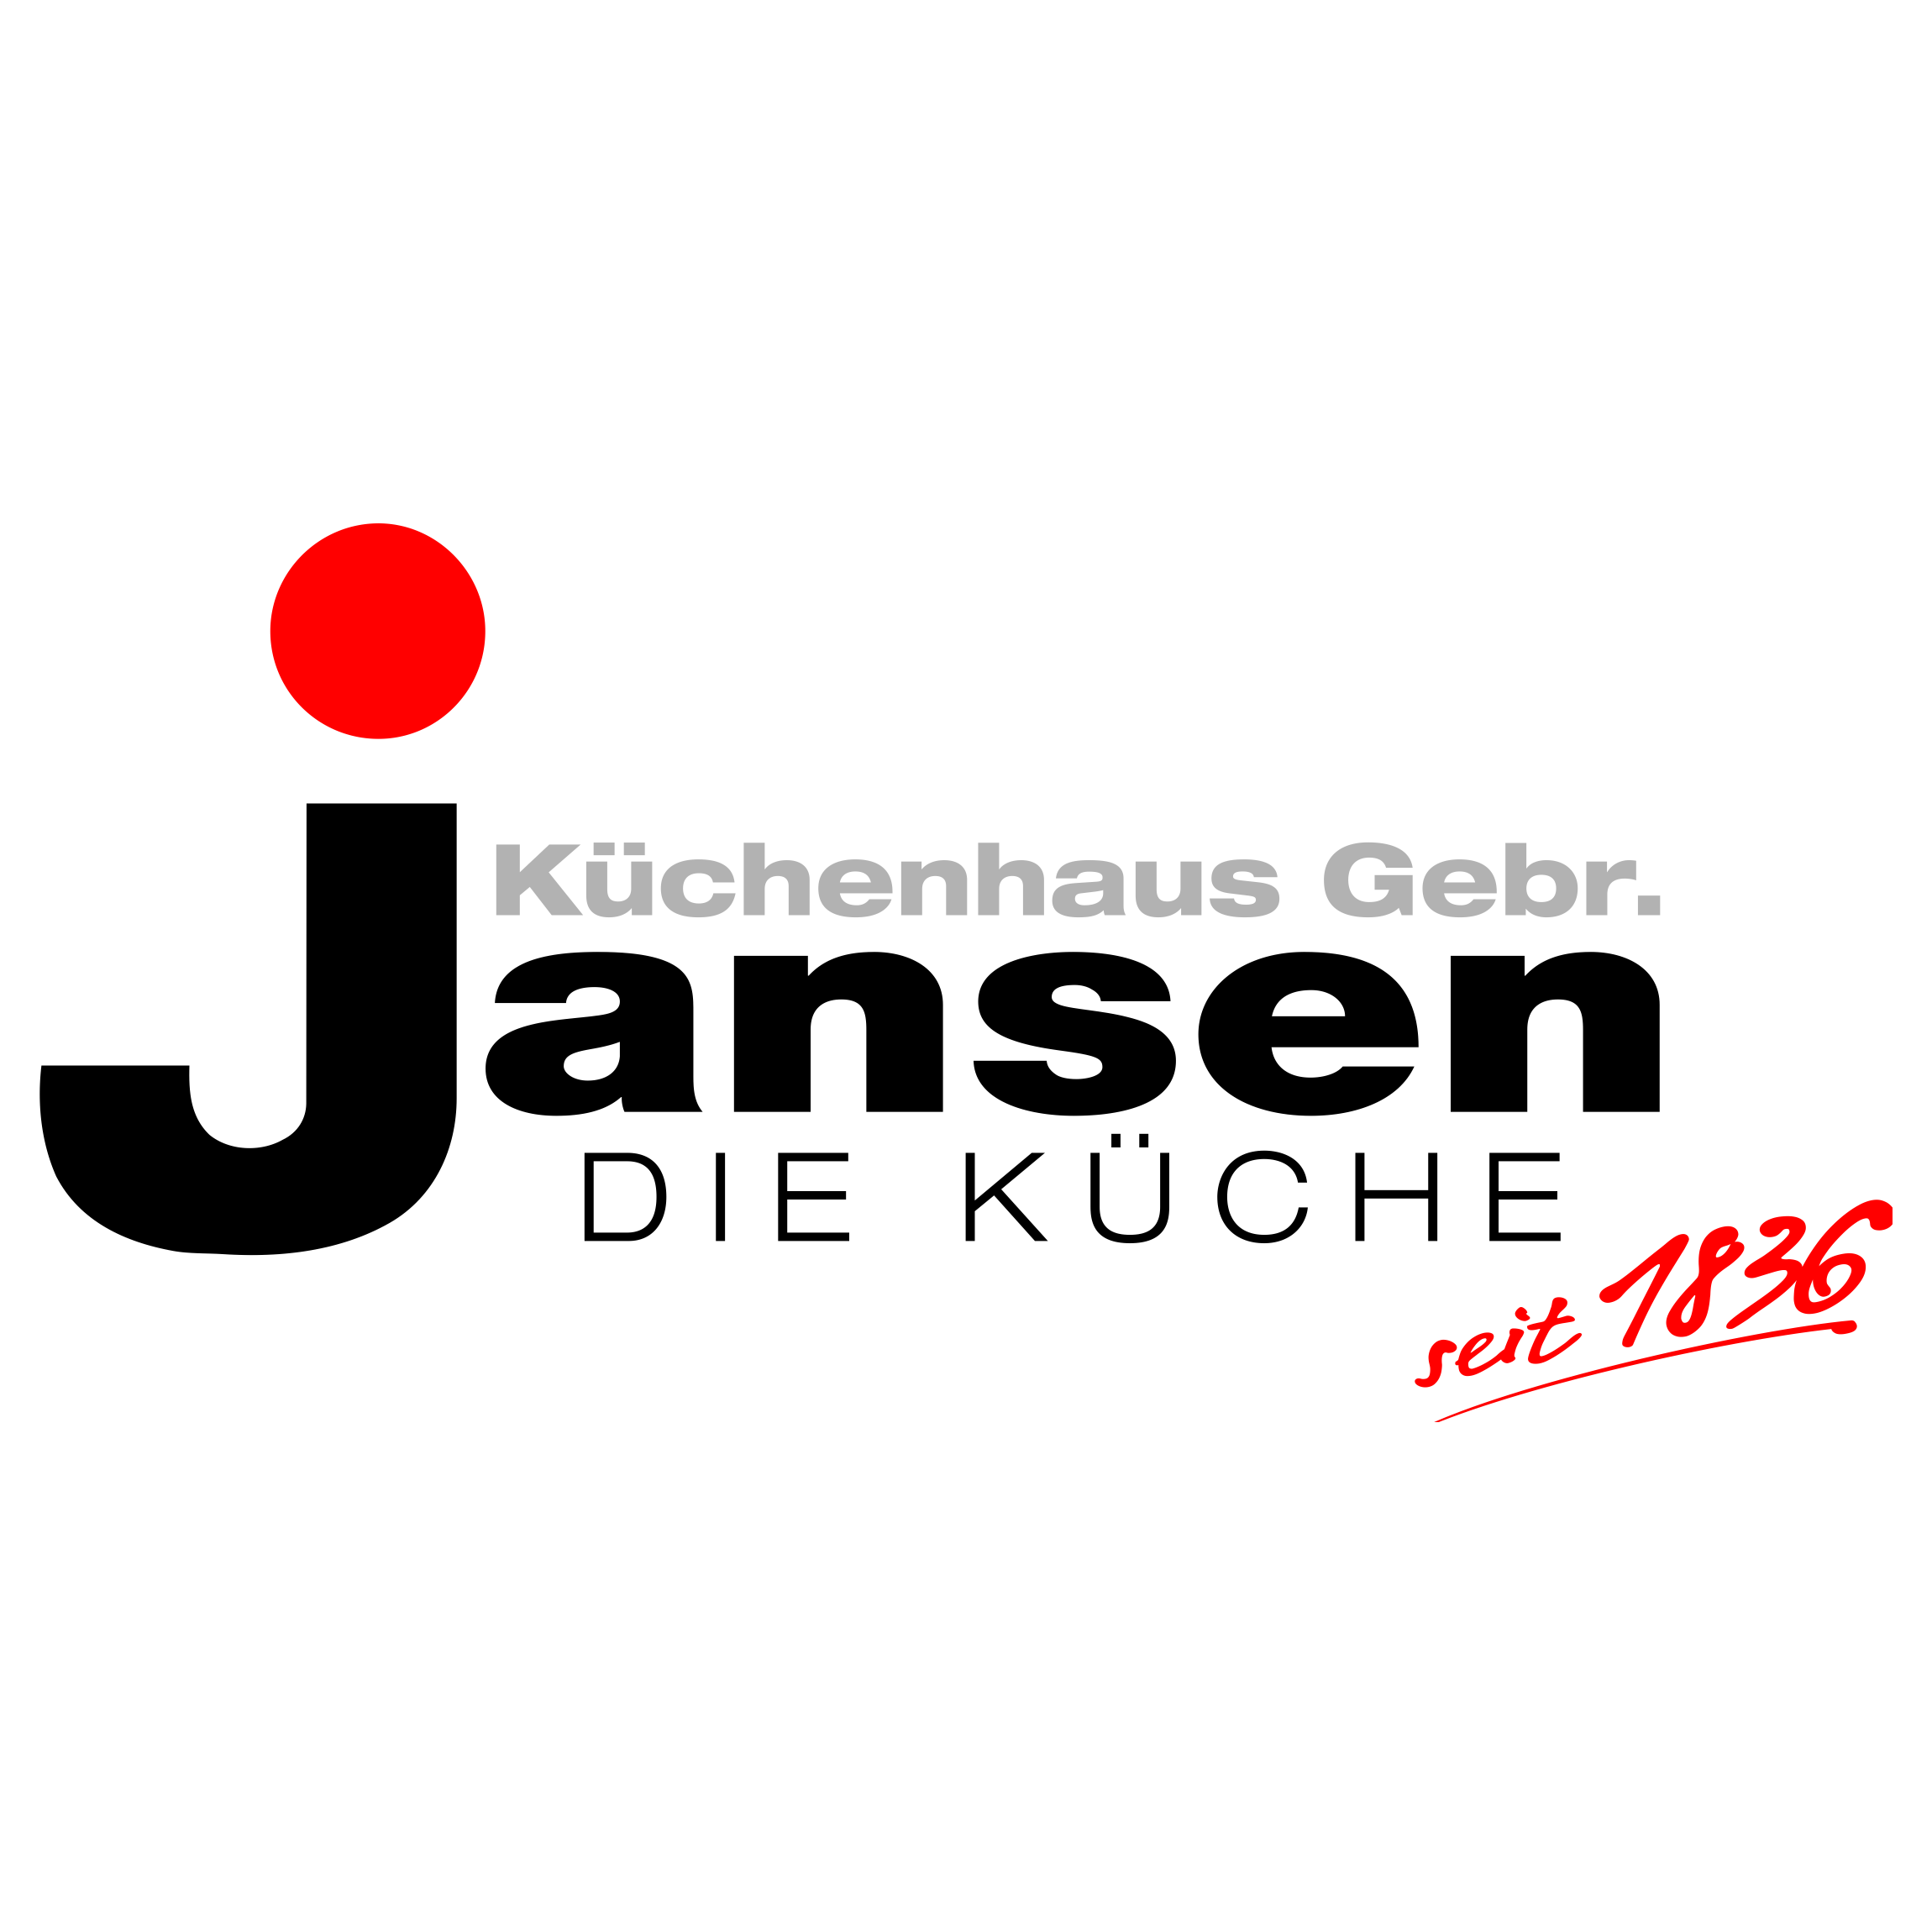 Küchenhaus Gebr. Jansen in Mönchengladbach-Günhoven